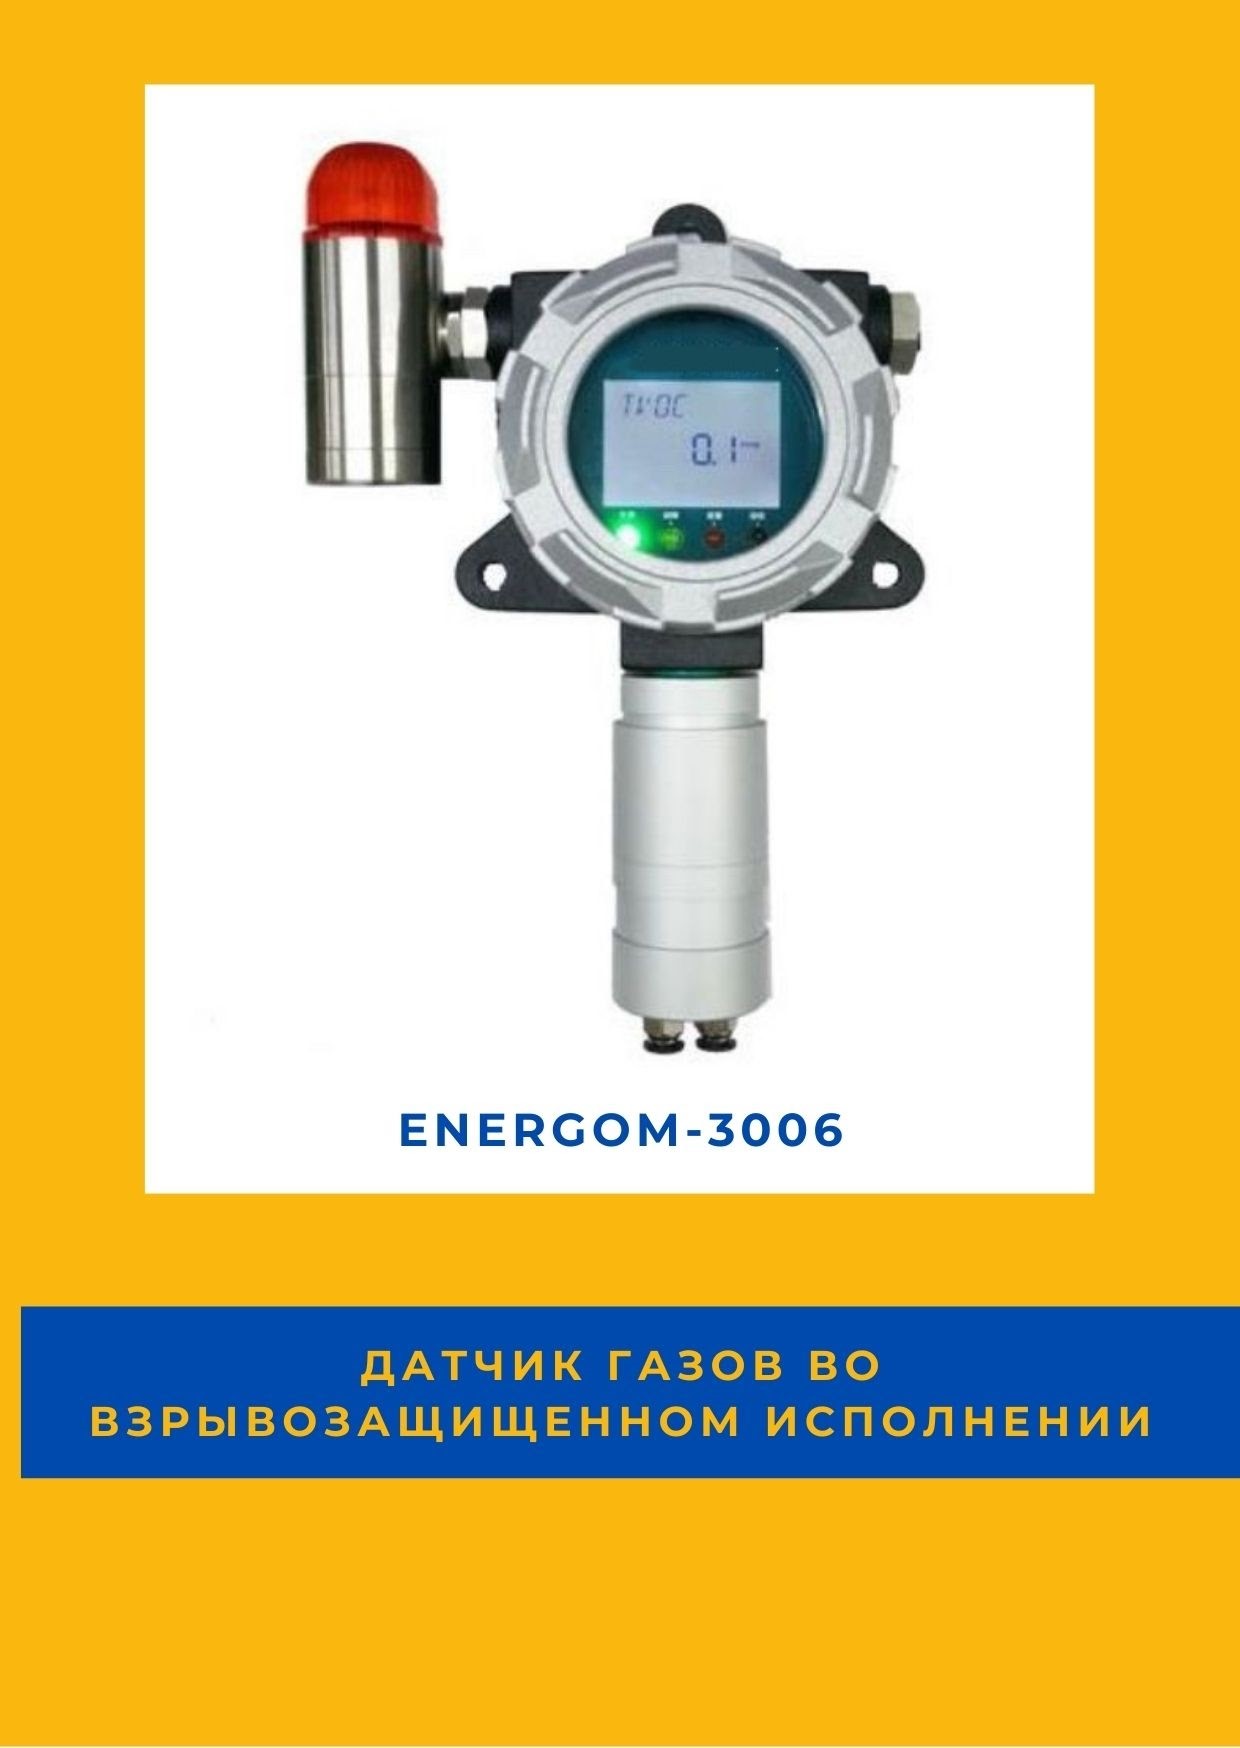 Датчик газов во взрывозащищенном исполнении EnergoM-3006 в городе Москва, фото 1, Московская область